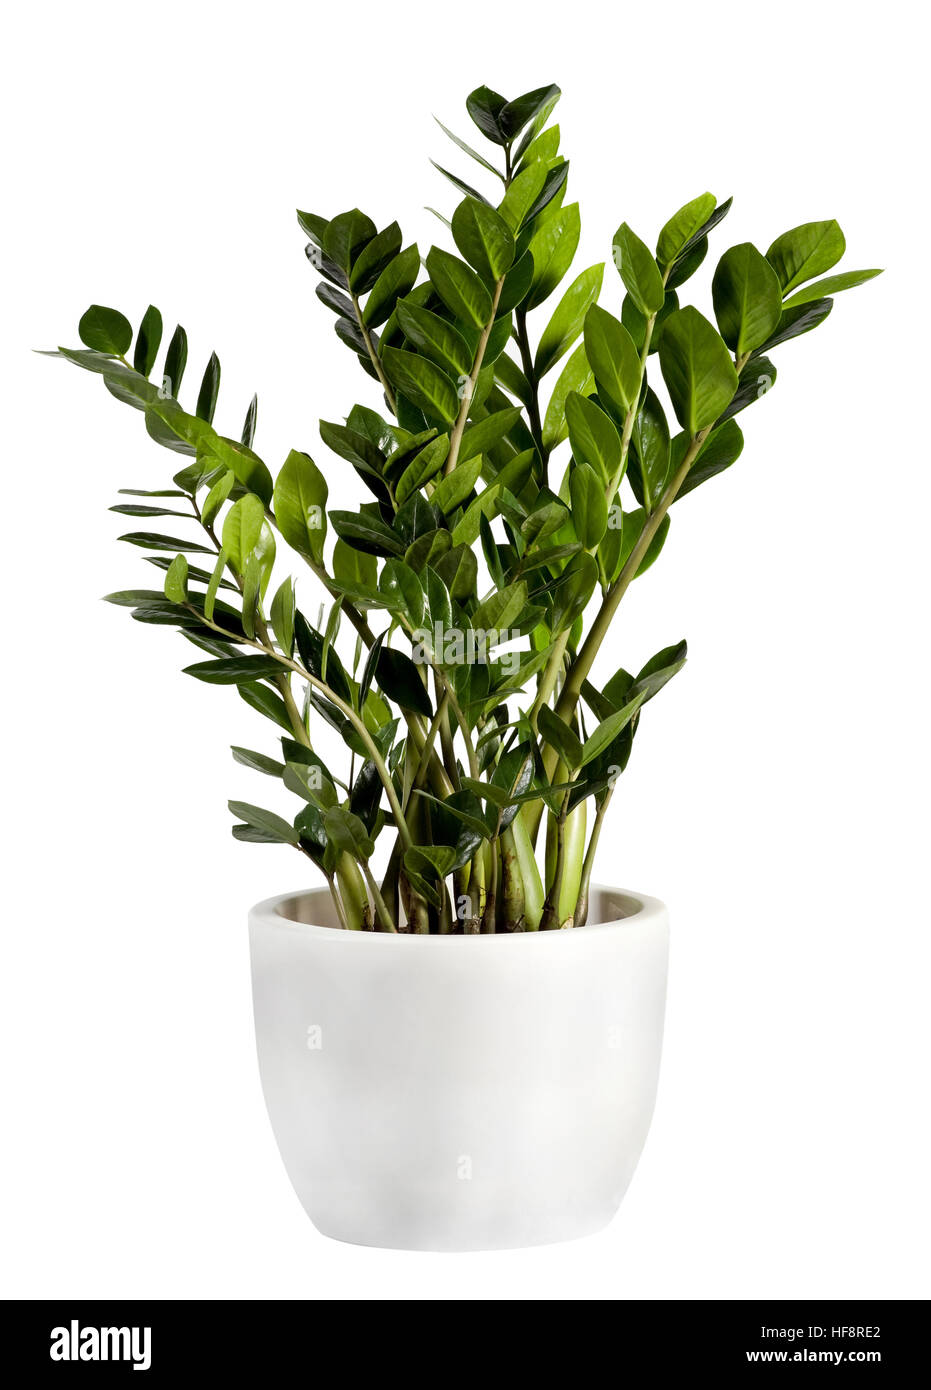 Kultivierte Zamioculcas Zimmerpflanze in einem einfachen weißen Blumentopf auf einem weißen Hintergrund Stockfoto